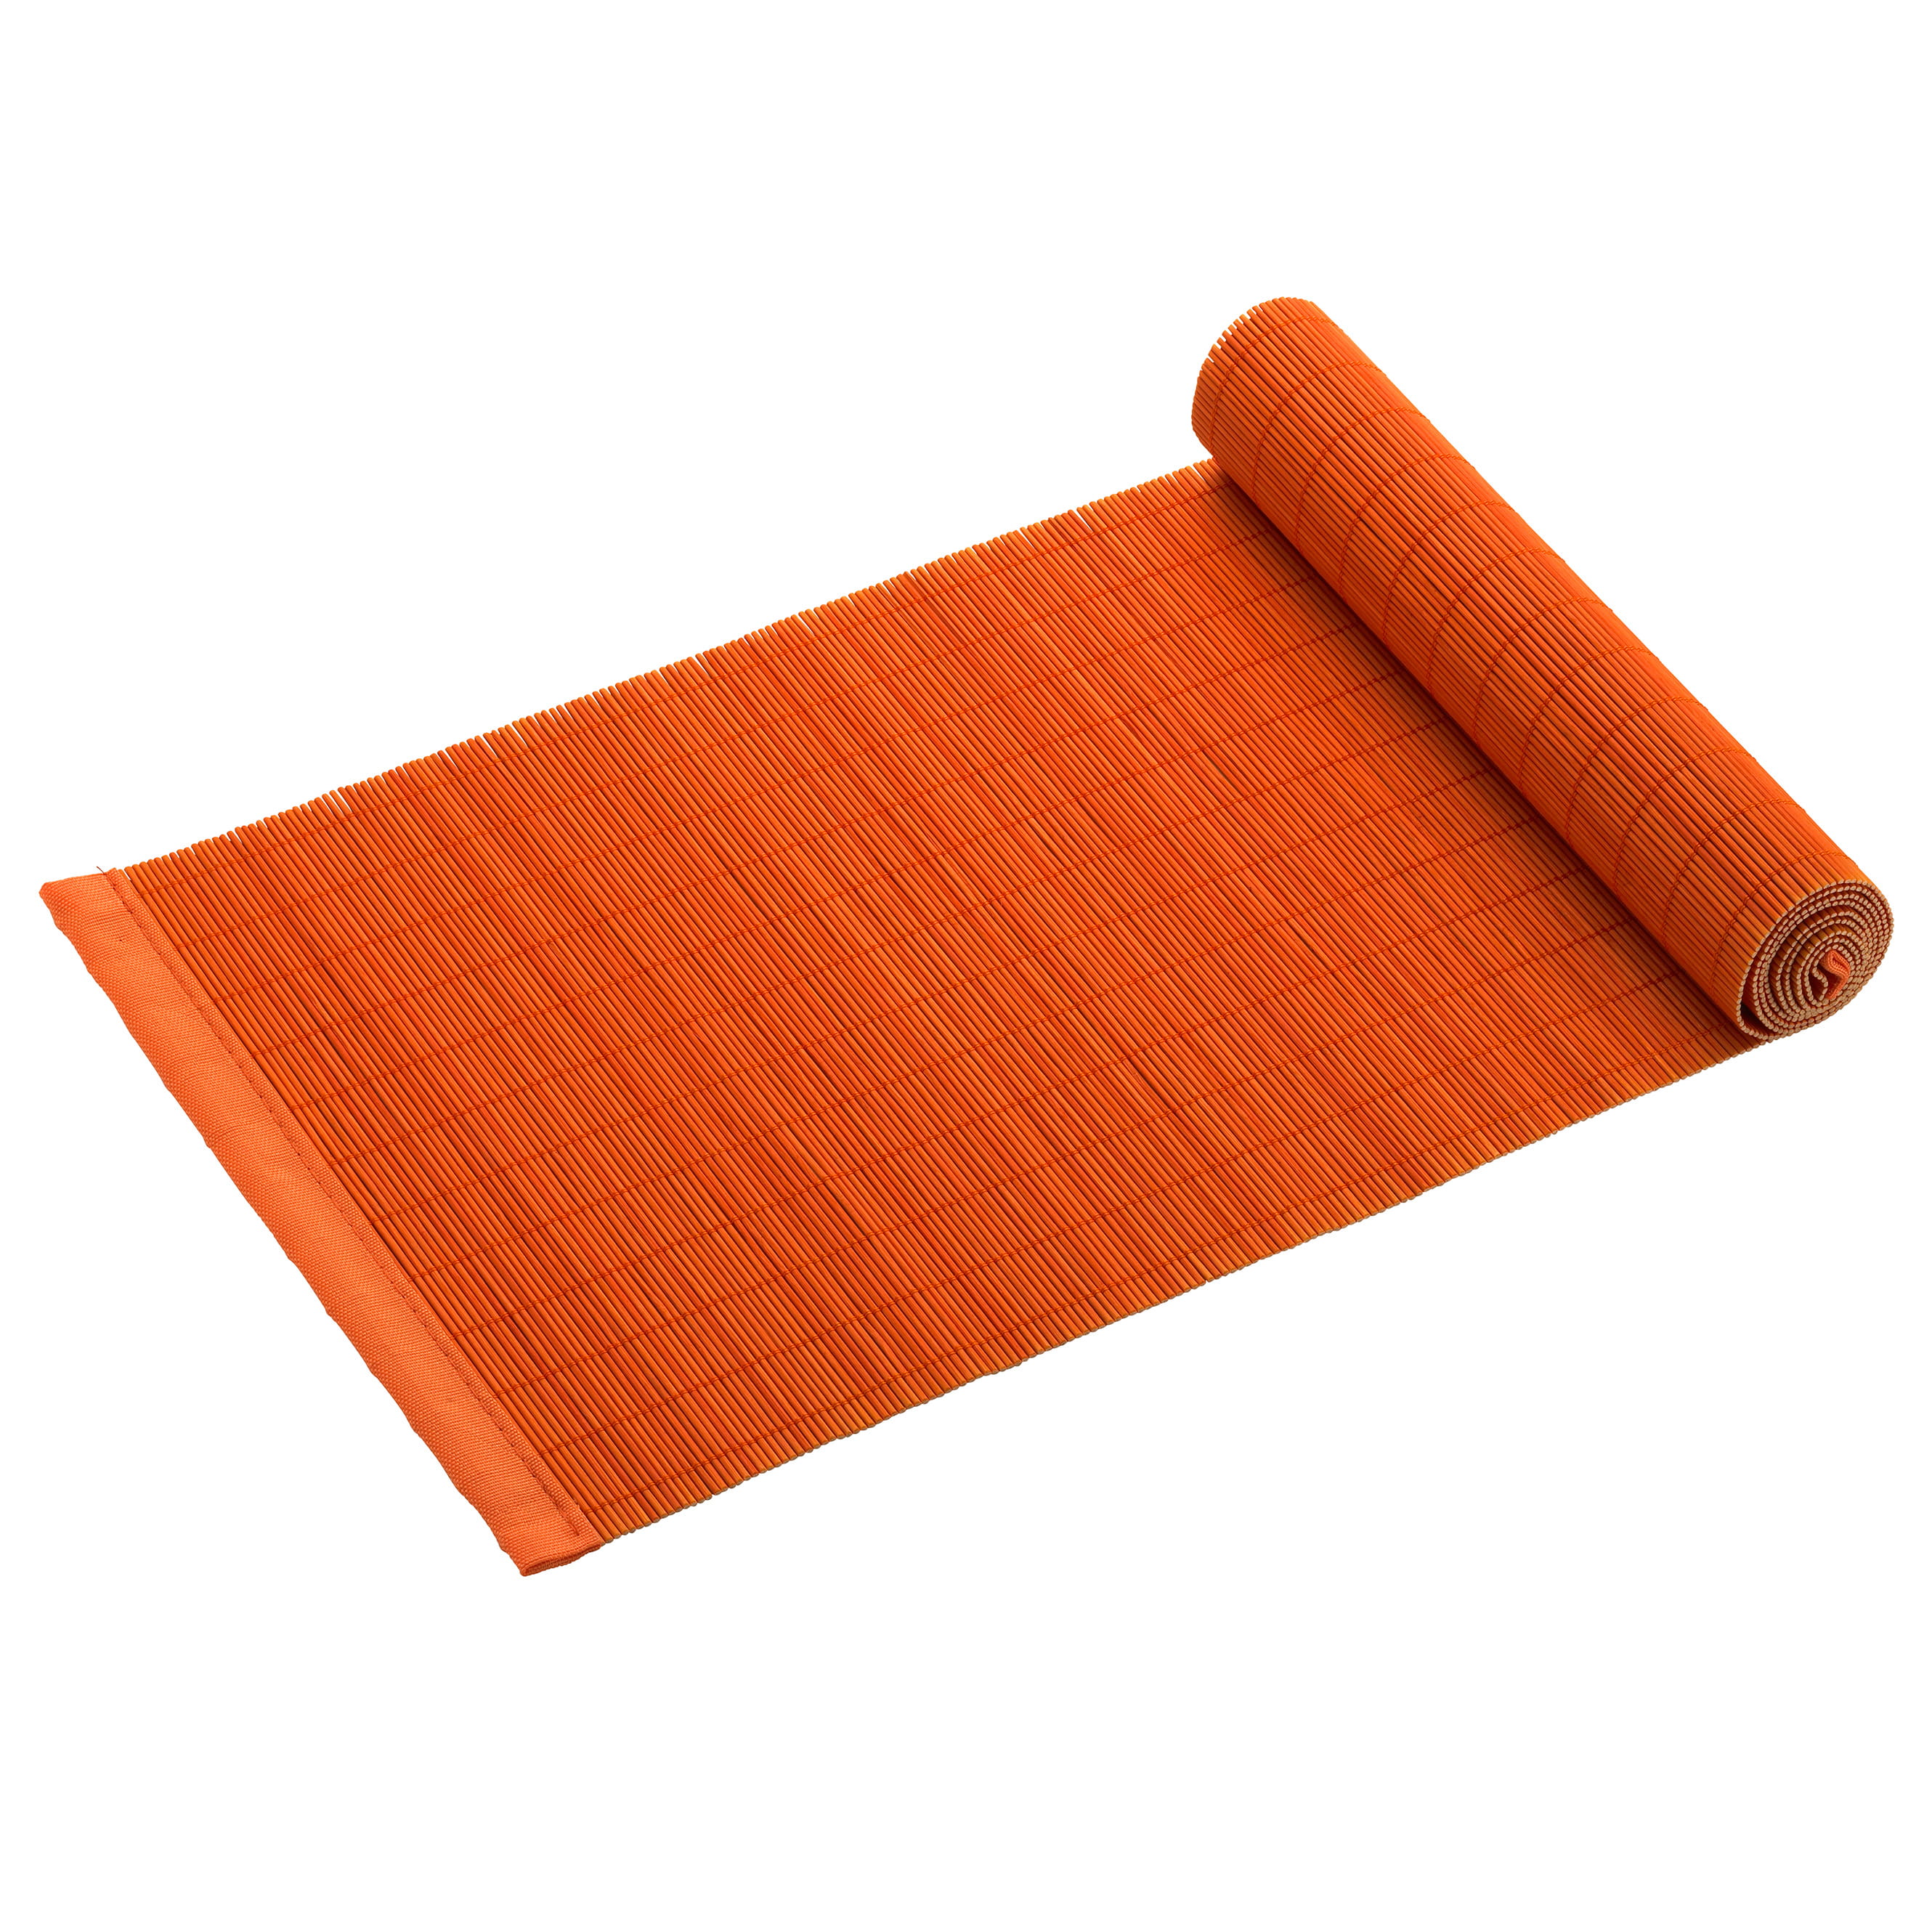 PLACESETS Tischläufer Orange, 150 x 30 cm, Bambus